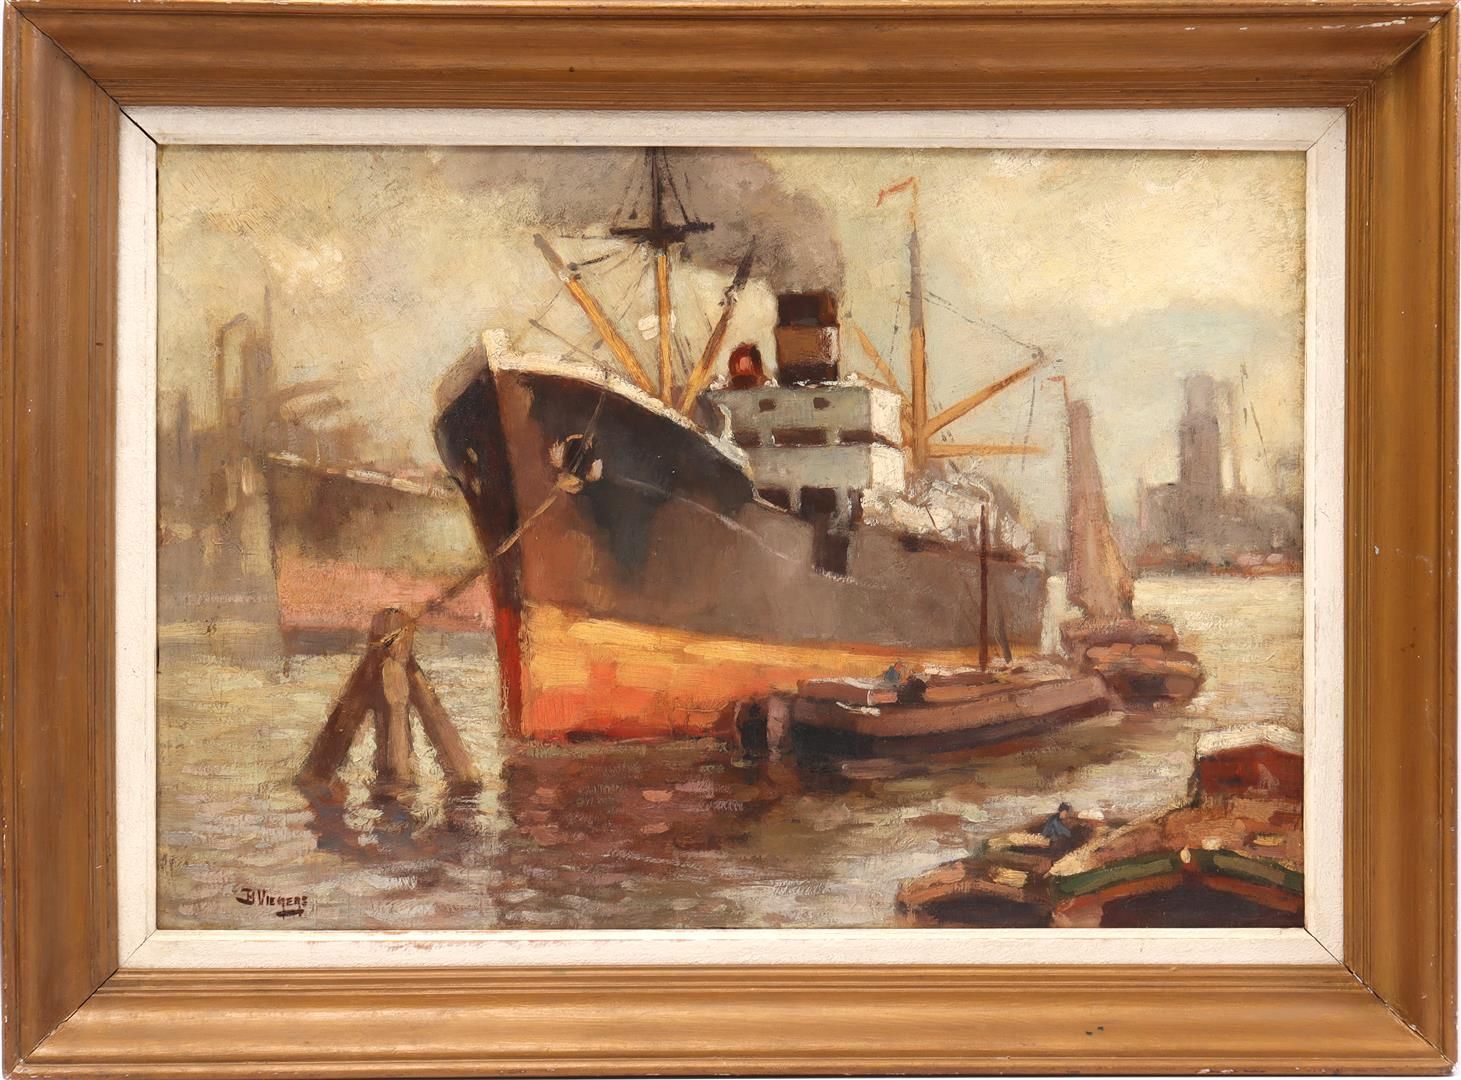 Ben Viegers Ben Viegers (1886-1947)

Barcos en el puerto, panel 51x74 cm